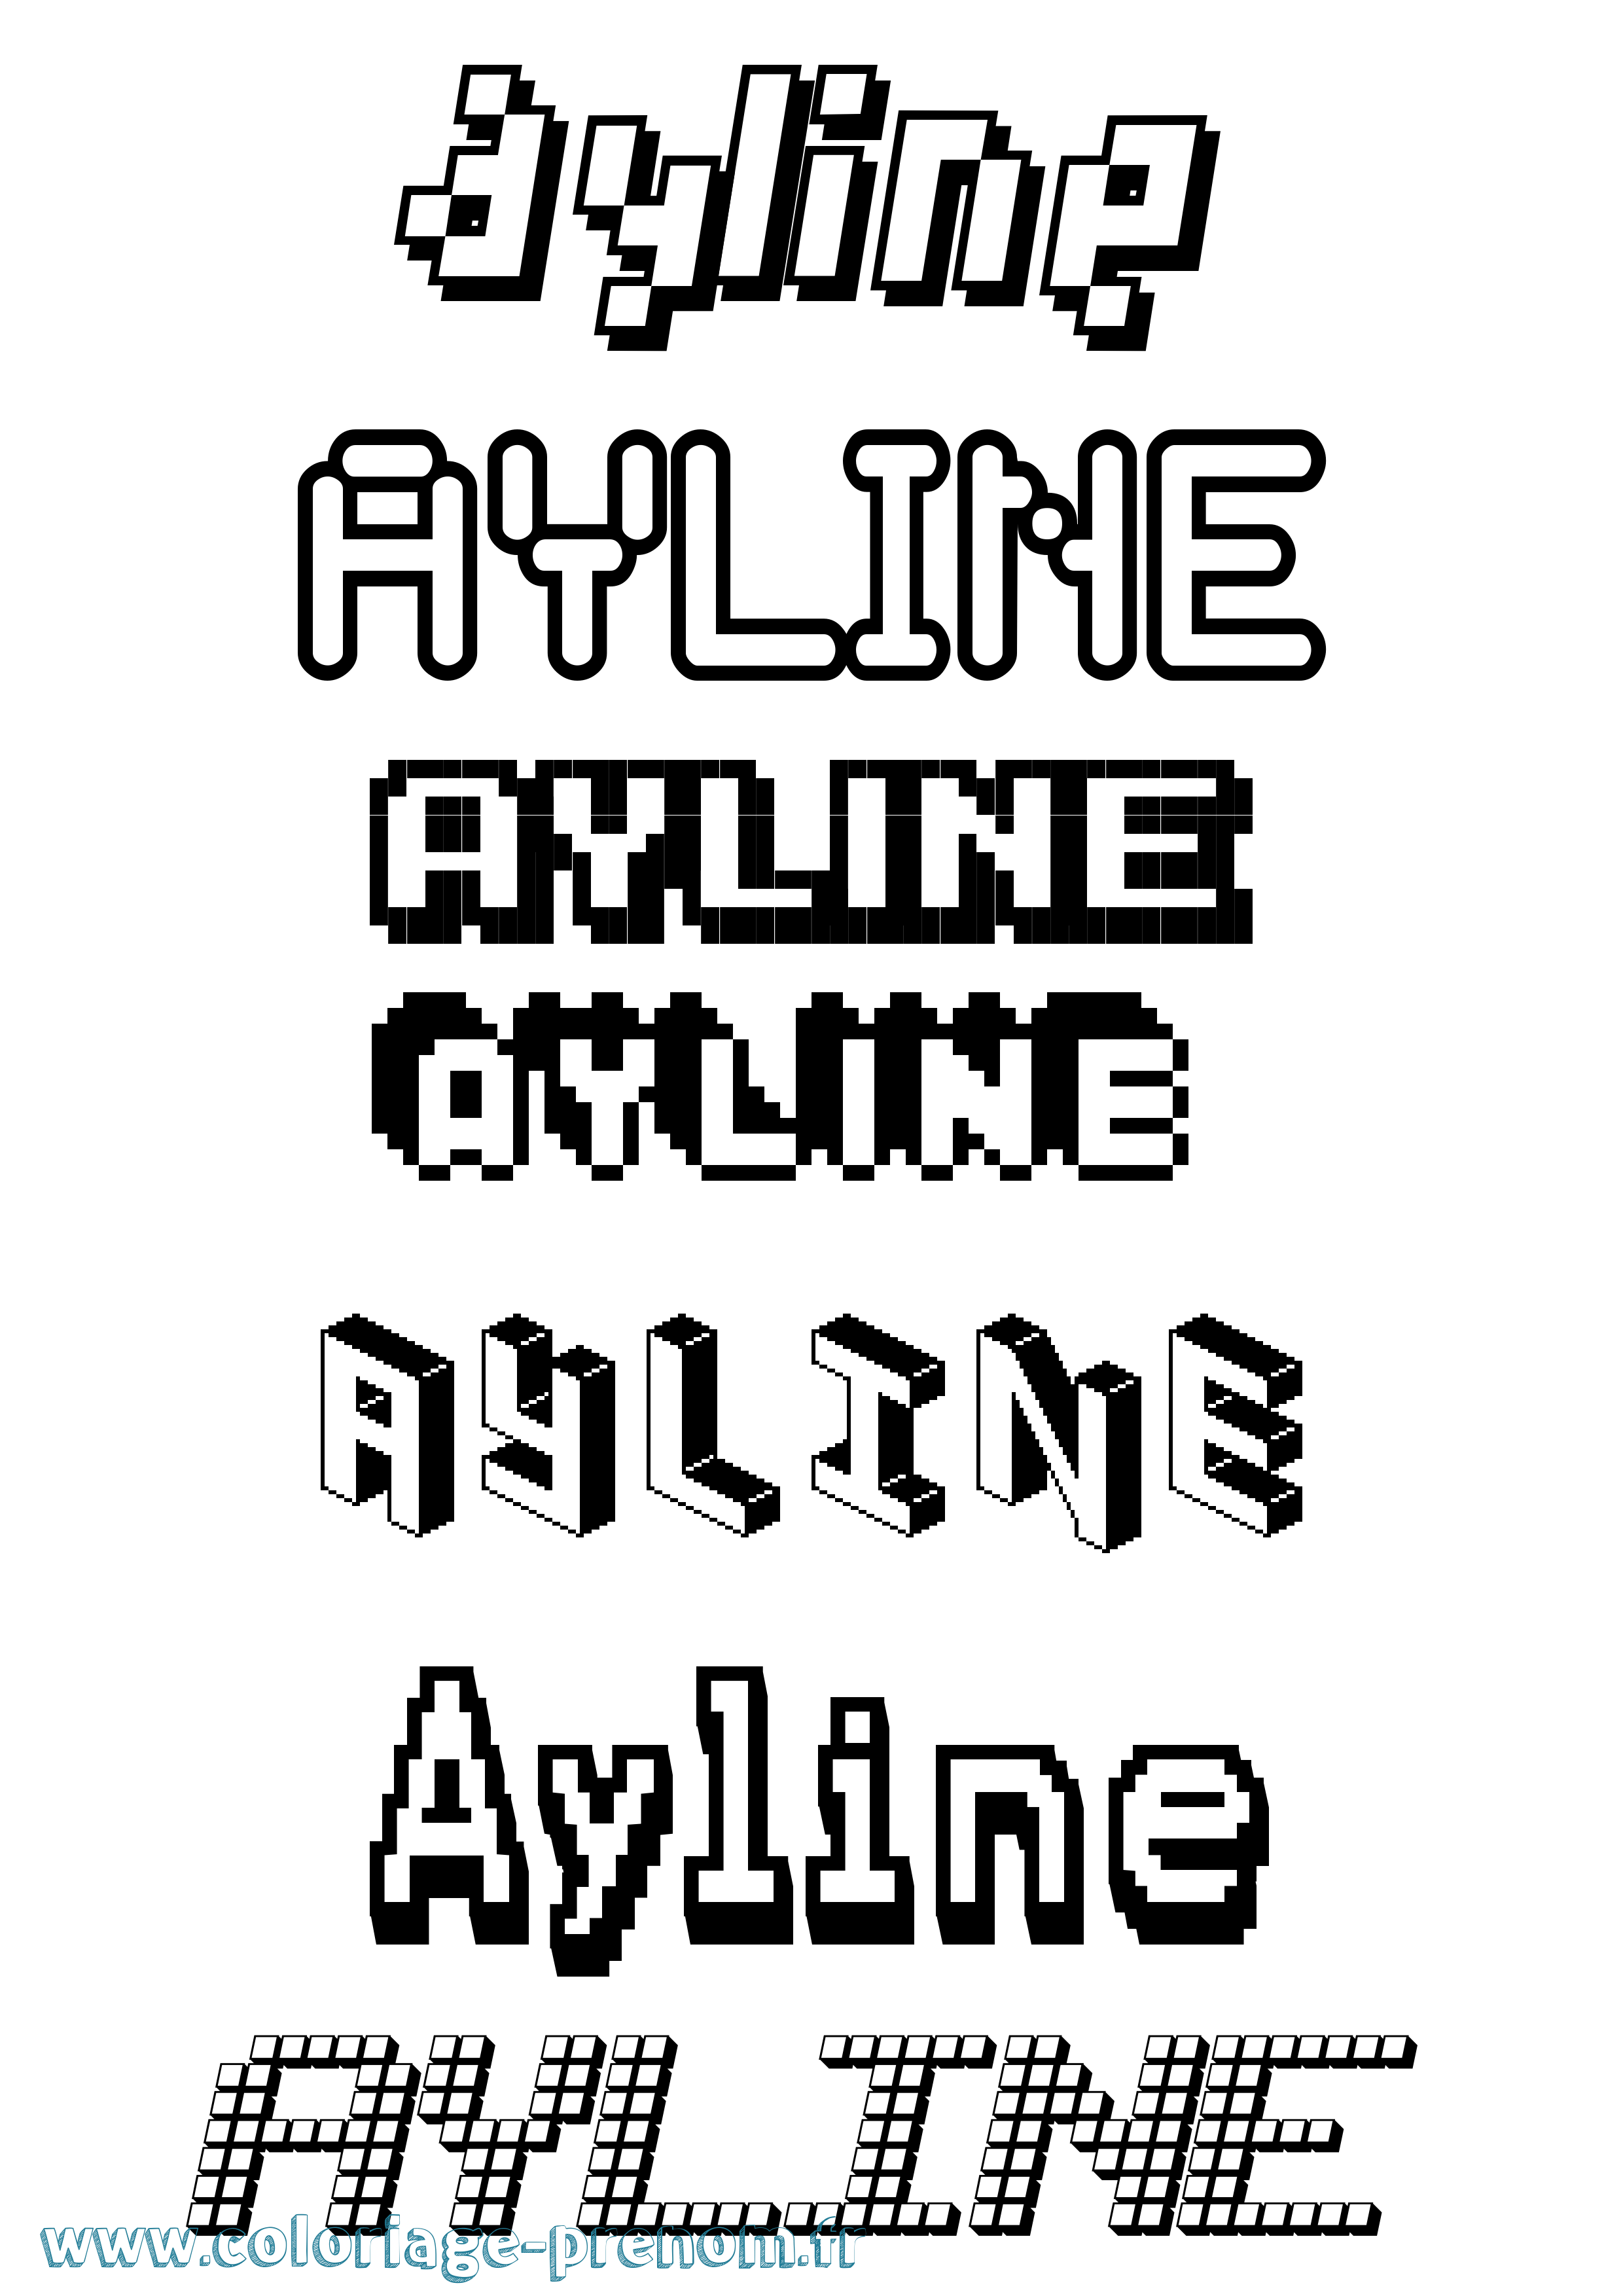 Coloriage prénom Ayline